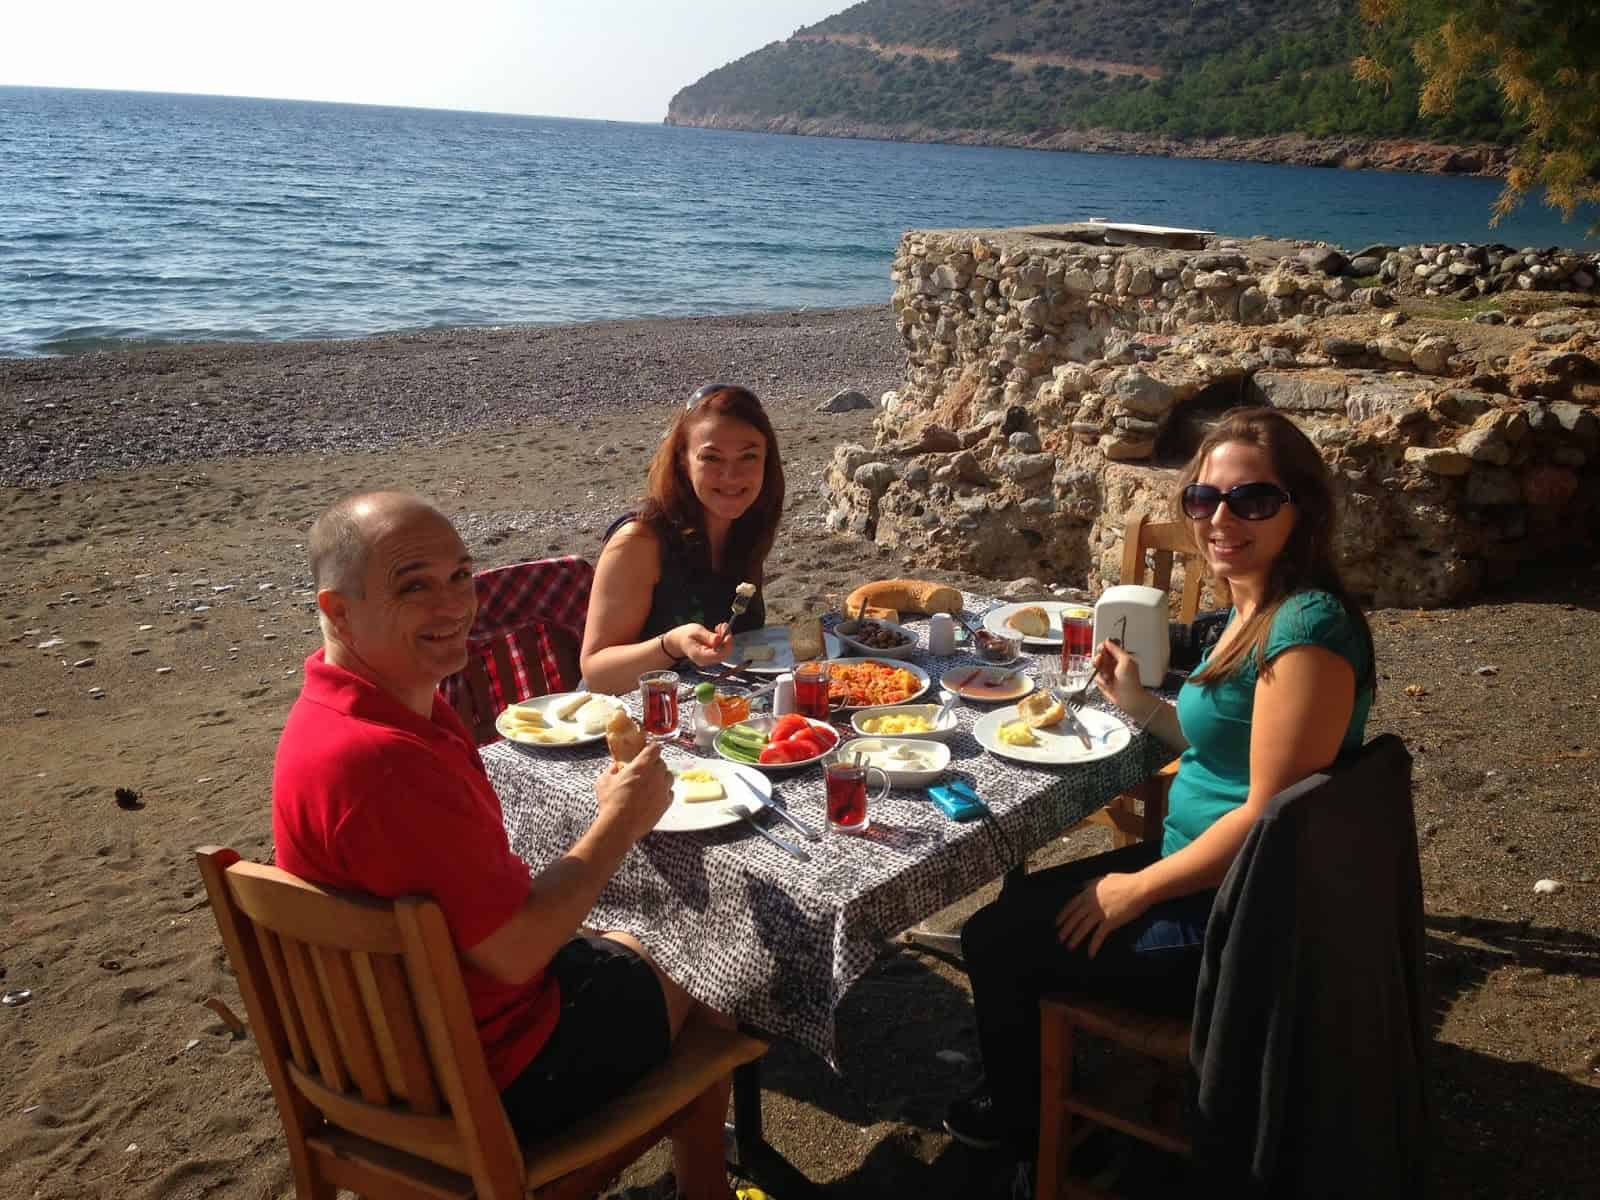 Breakfast on the beach at Ovabükü, Datça, Turkey